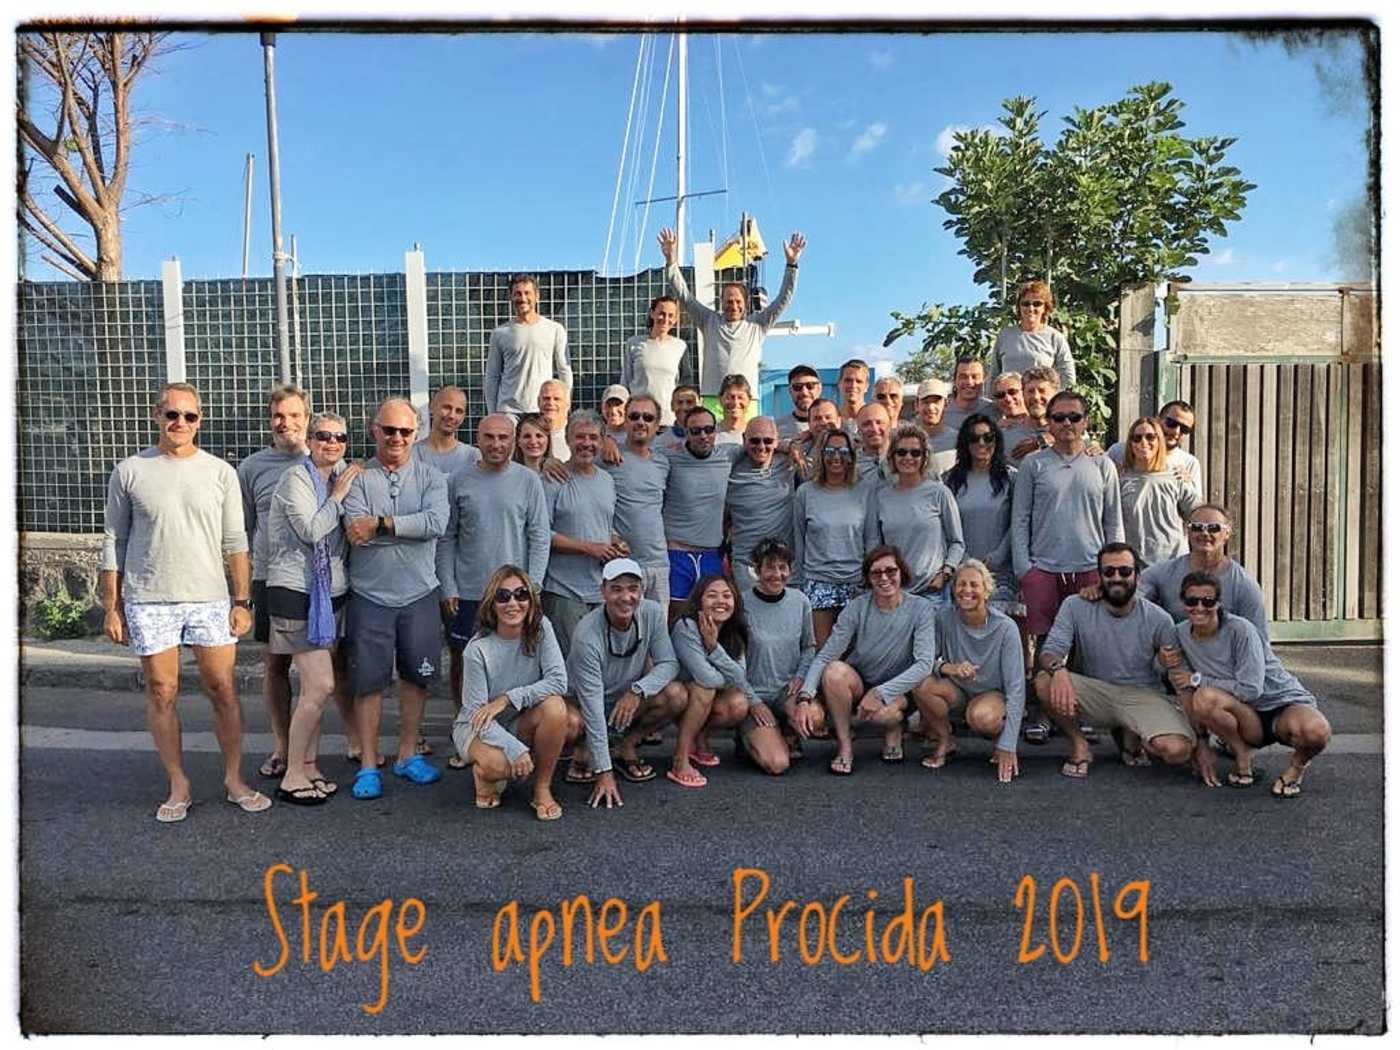 Apnea blukad - stage apnea Procida 2019